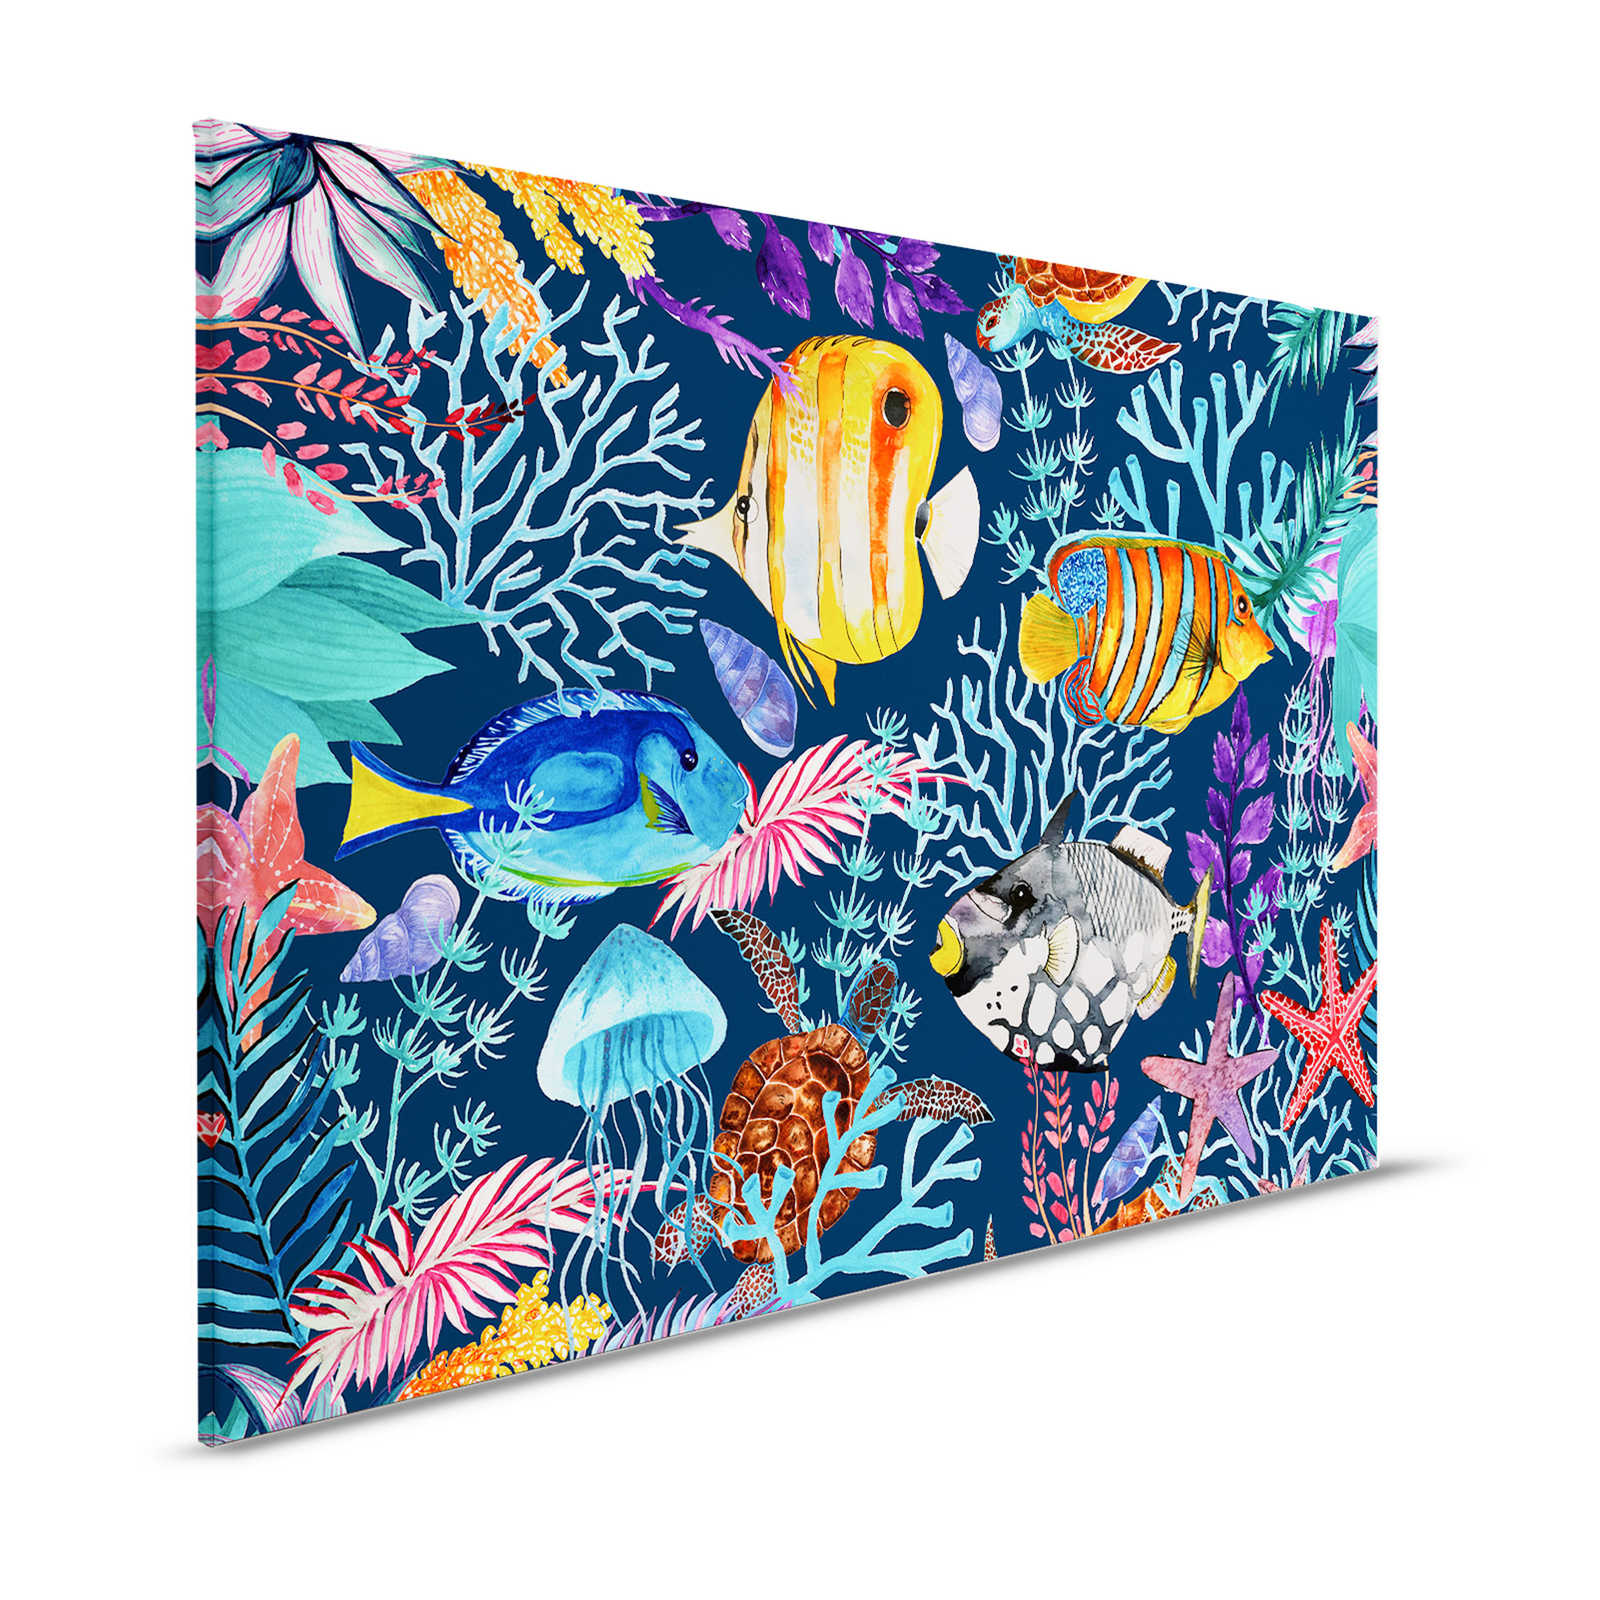 Unterwasser Leinwandbild mit bunten Fischen & Seesternen – 1,20 m x 0,80 m
